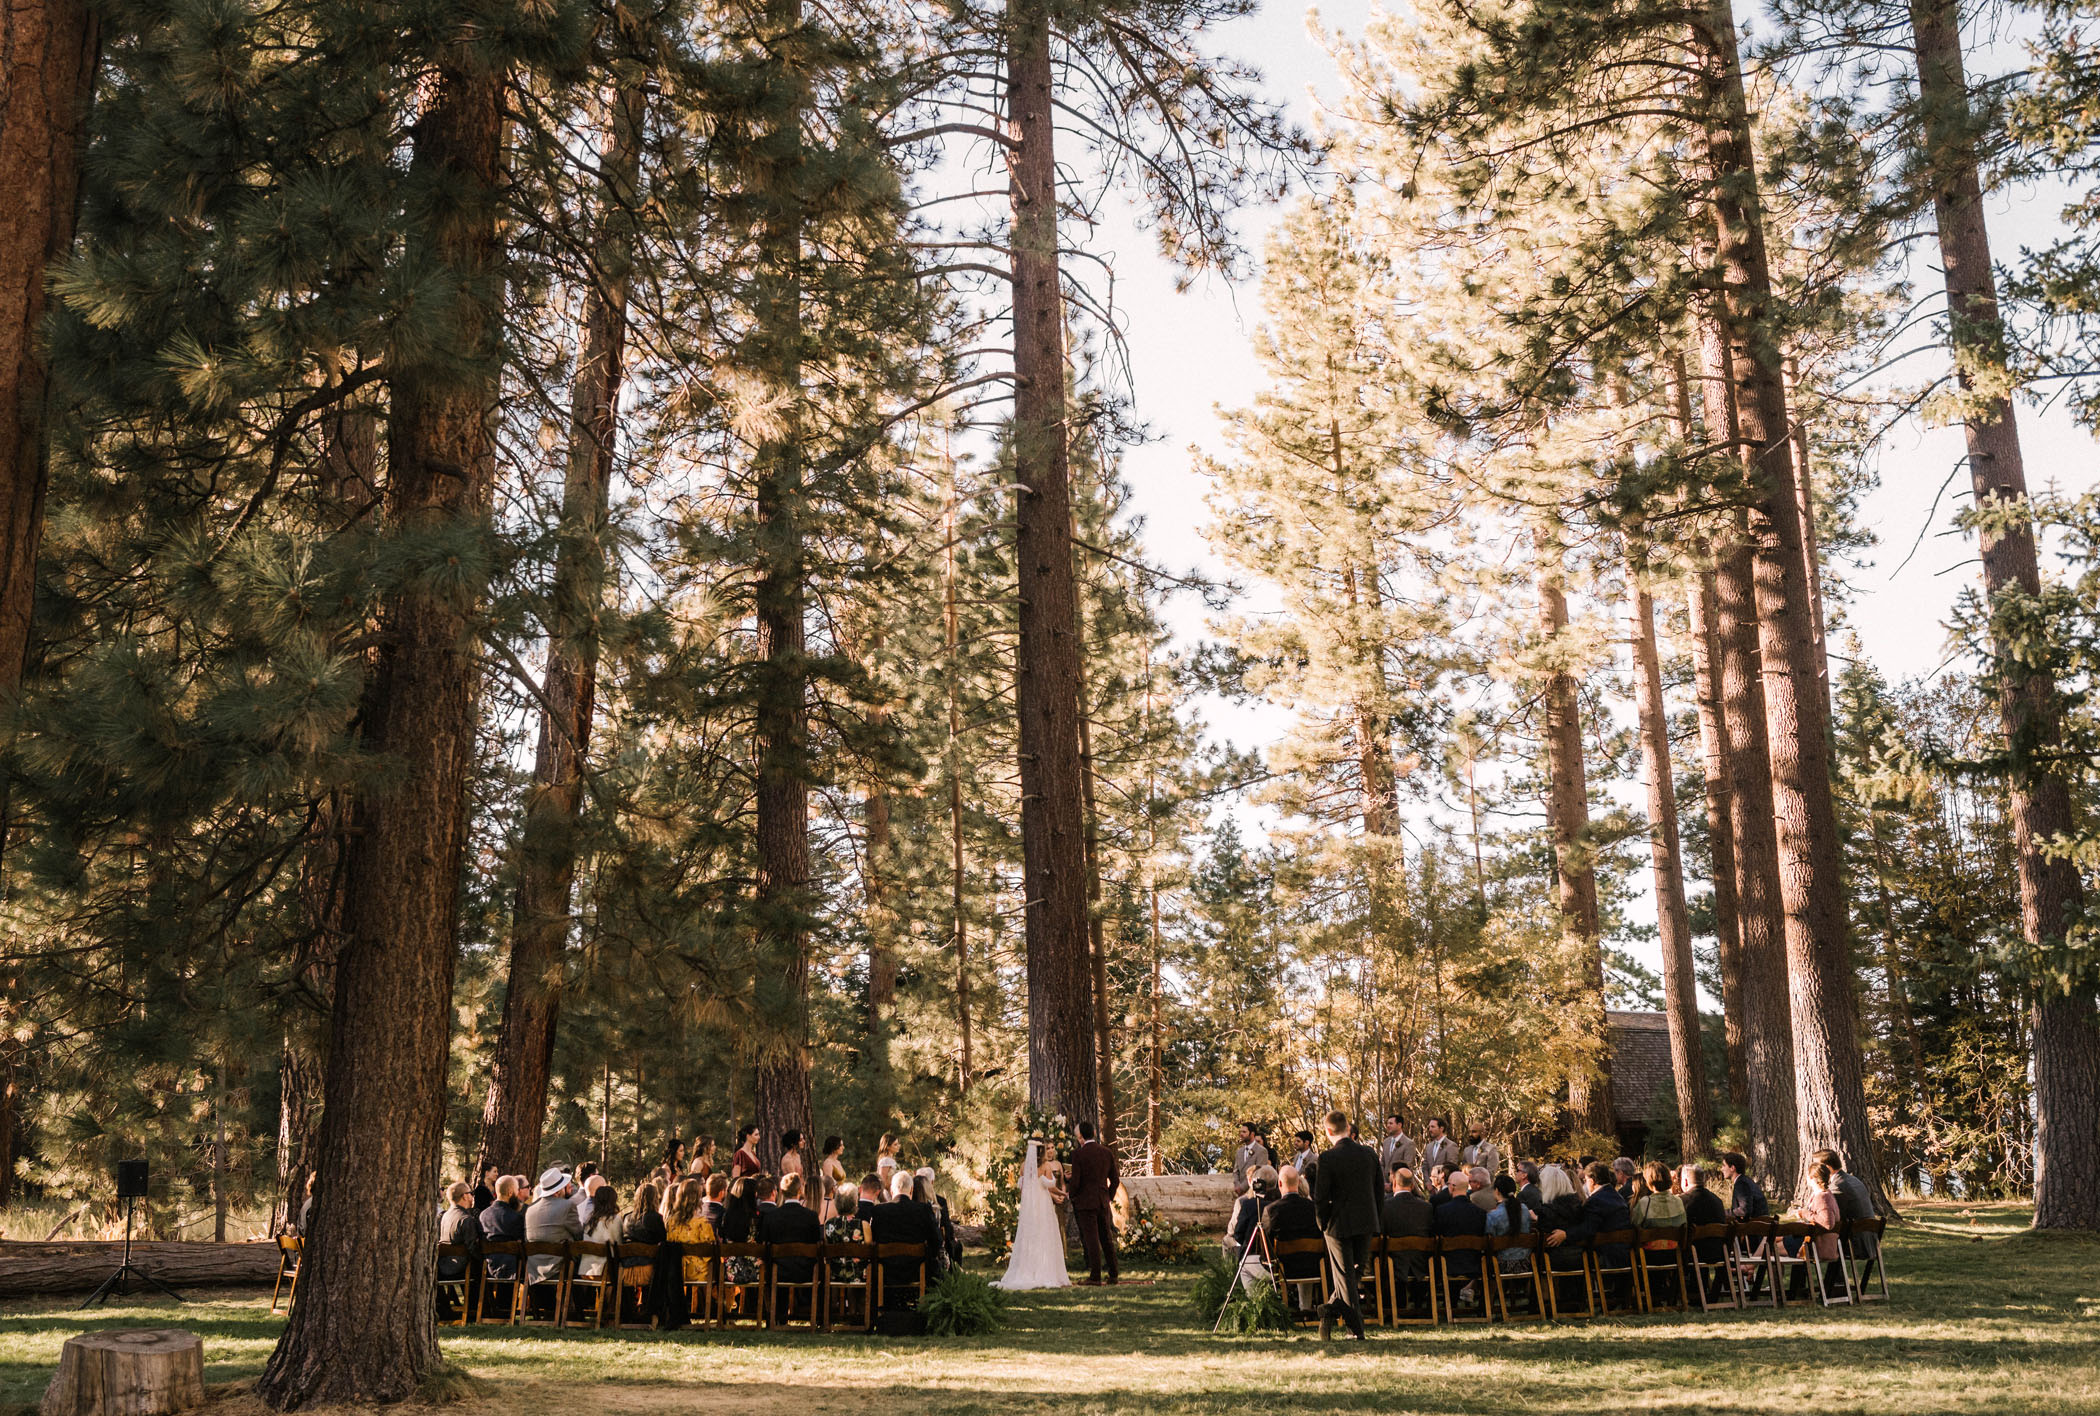 DIY Vintage Camp Inspired Wedding in South Lake Tahoe